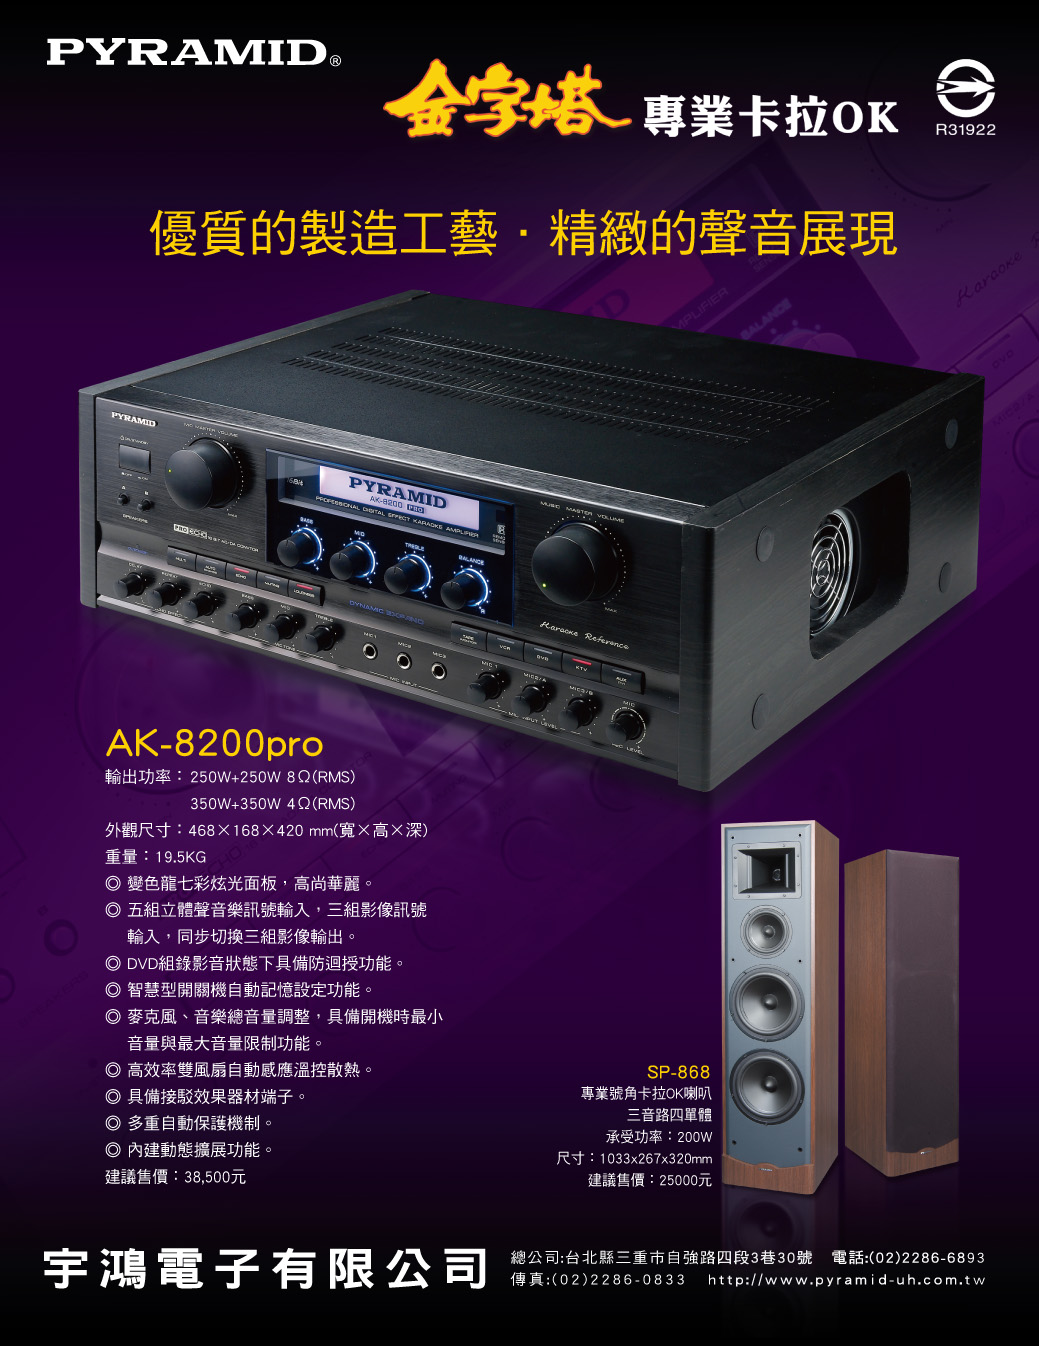 優質的製造工藝‧精緻的聲音展現 AK-8200pro & SP-868 p2